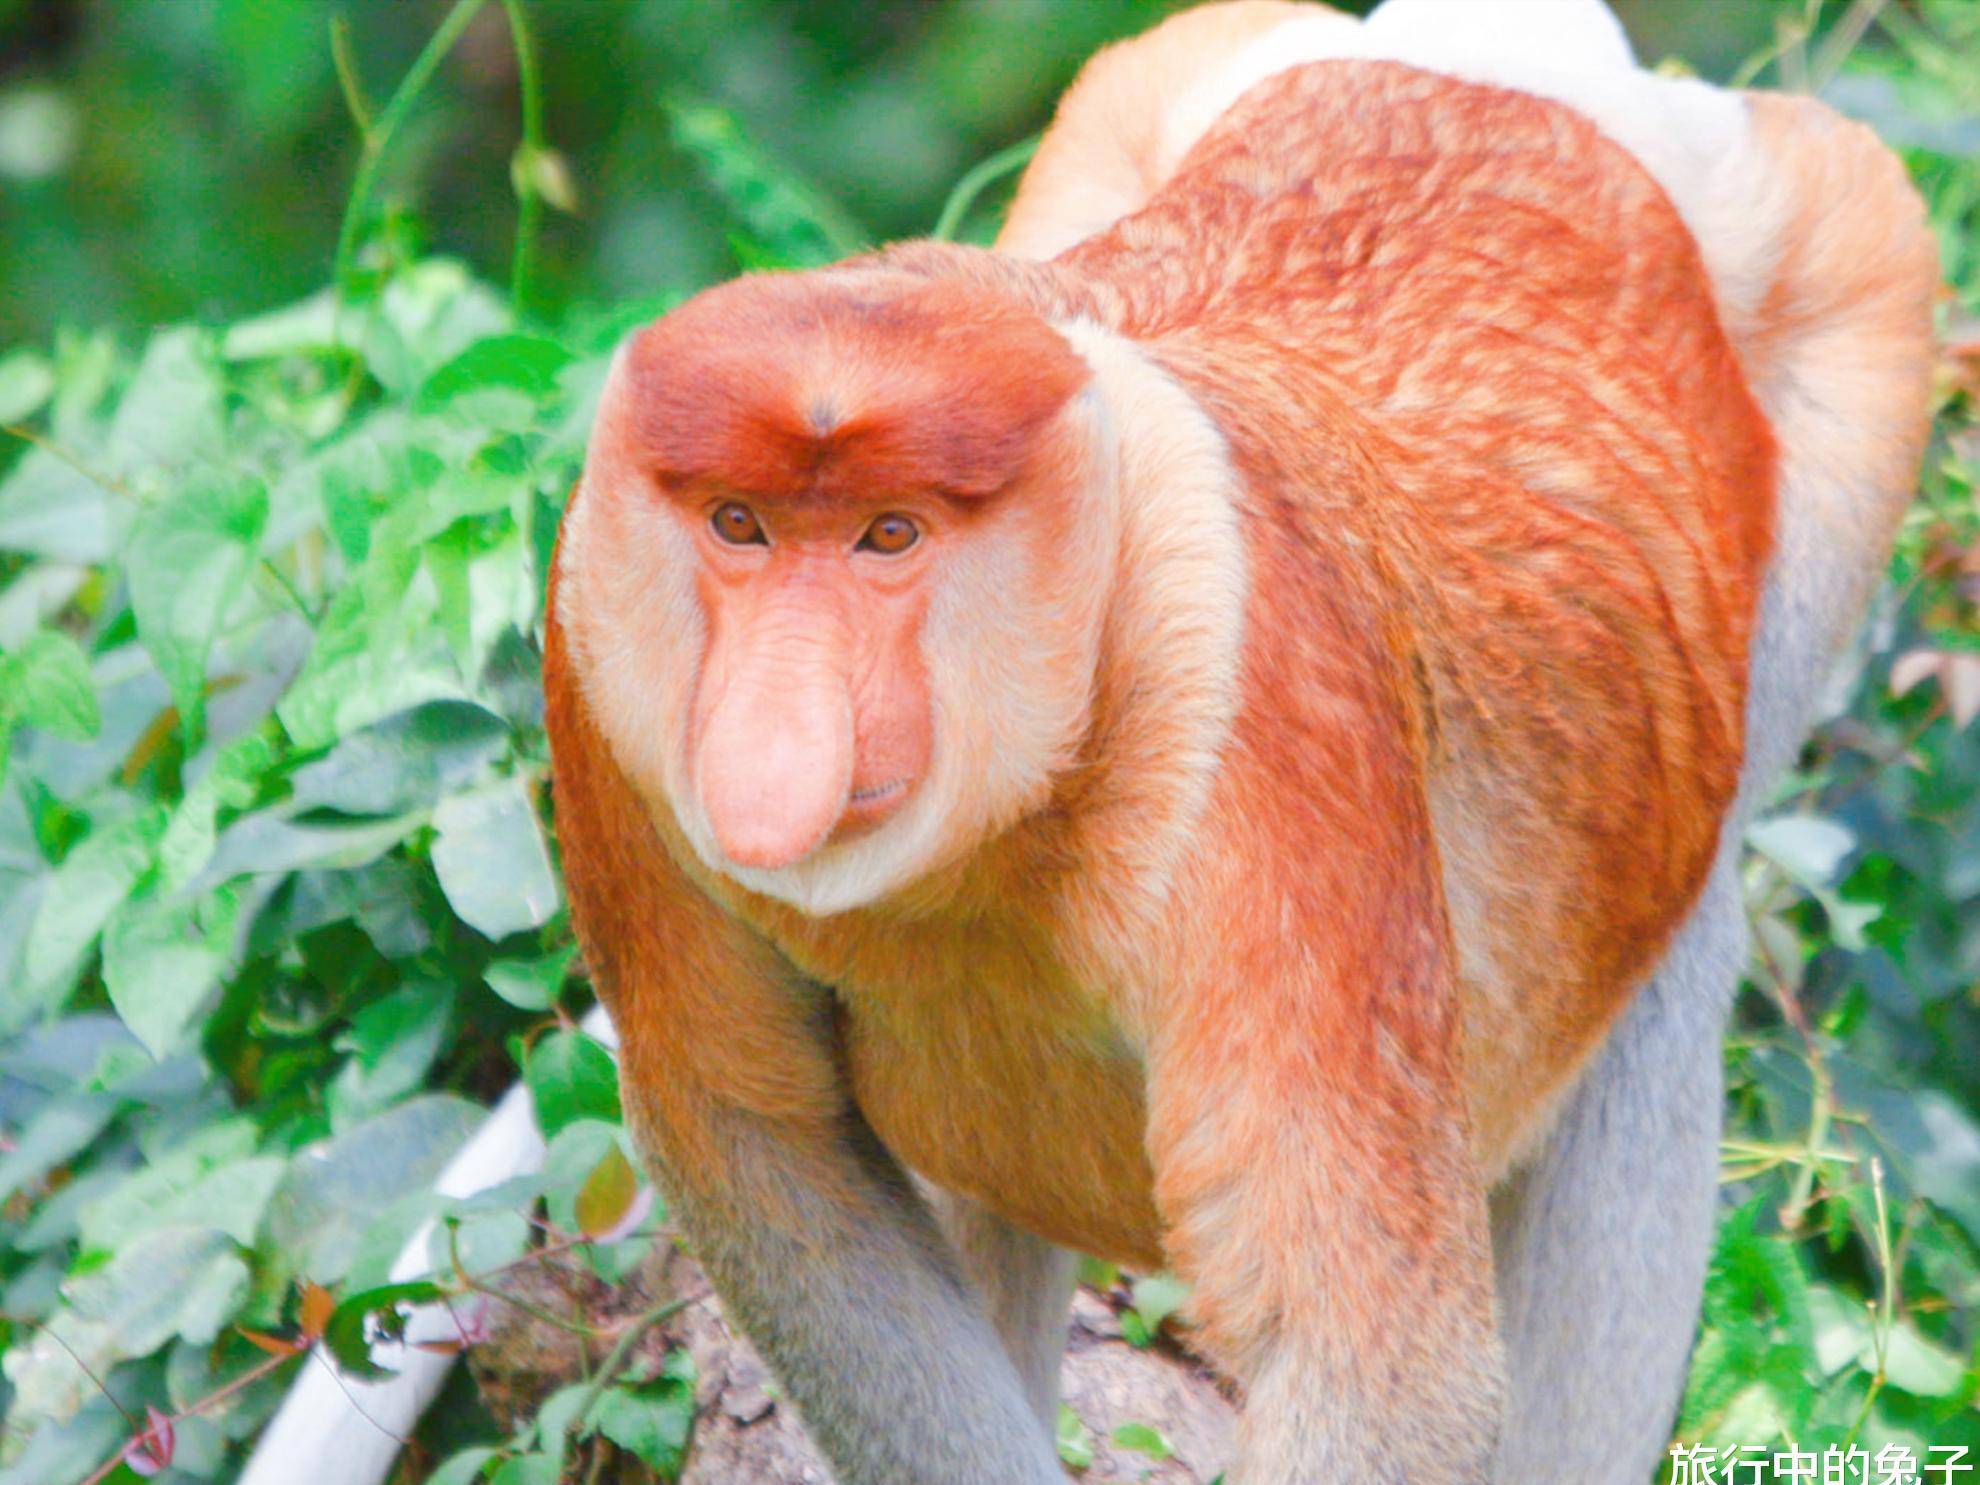 原创马来西亚国宝长鼻猴长相特别女游客不好意思合影